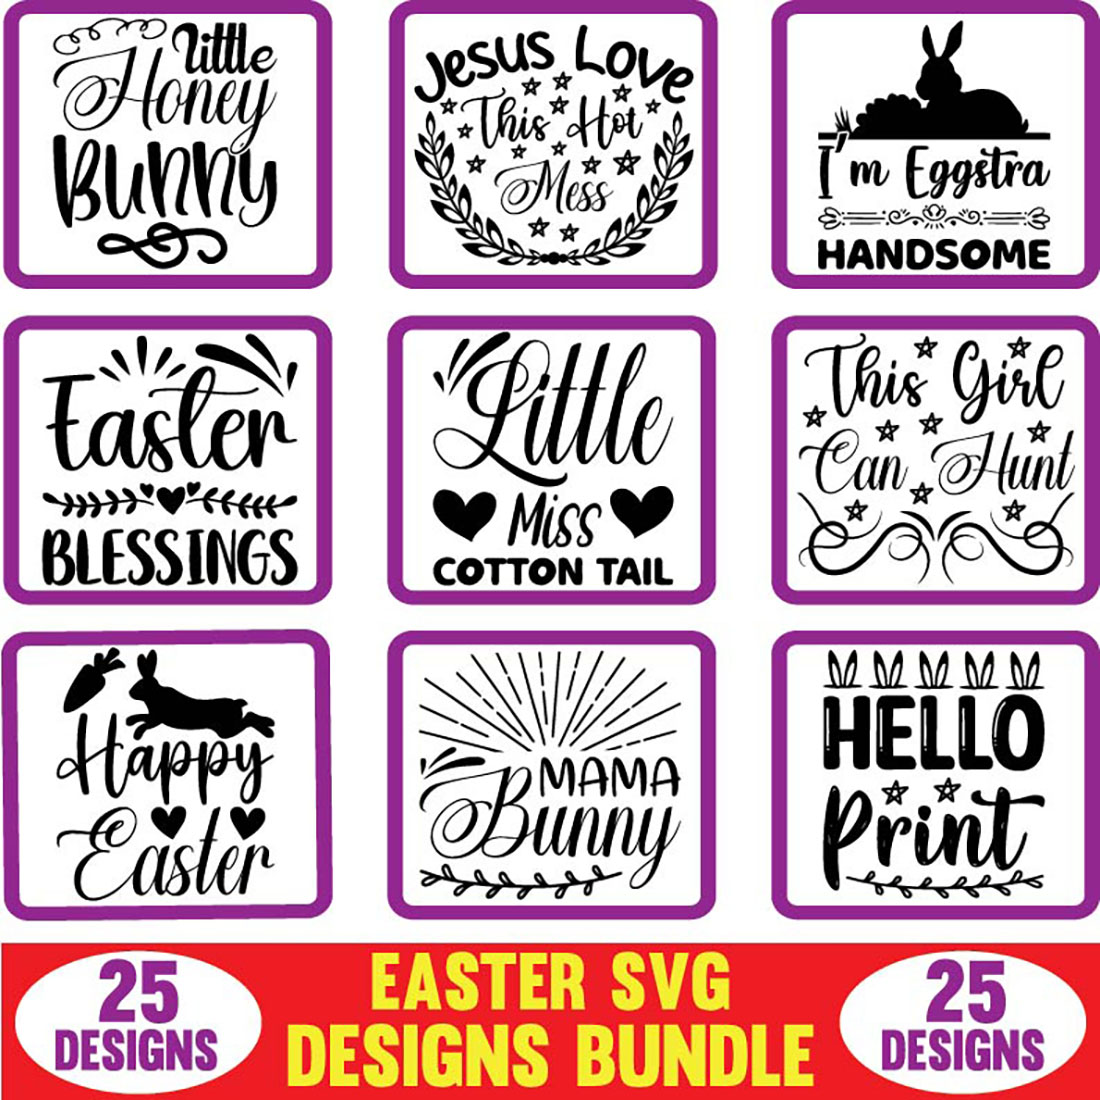 Easter SVG Designs Bundle cover.